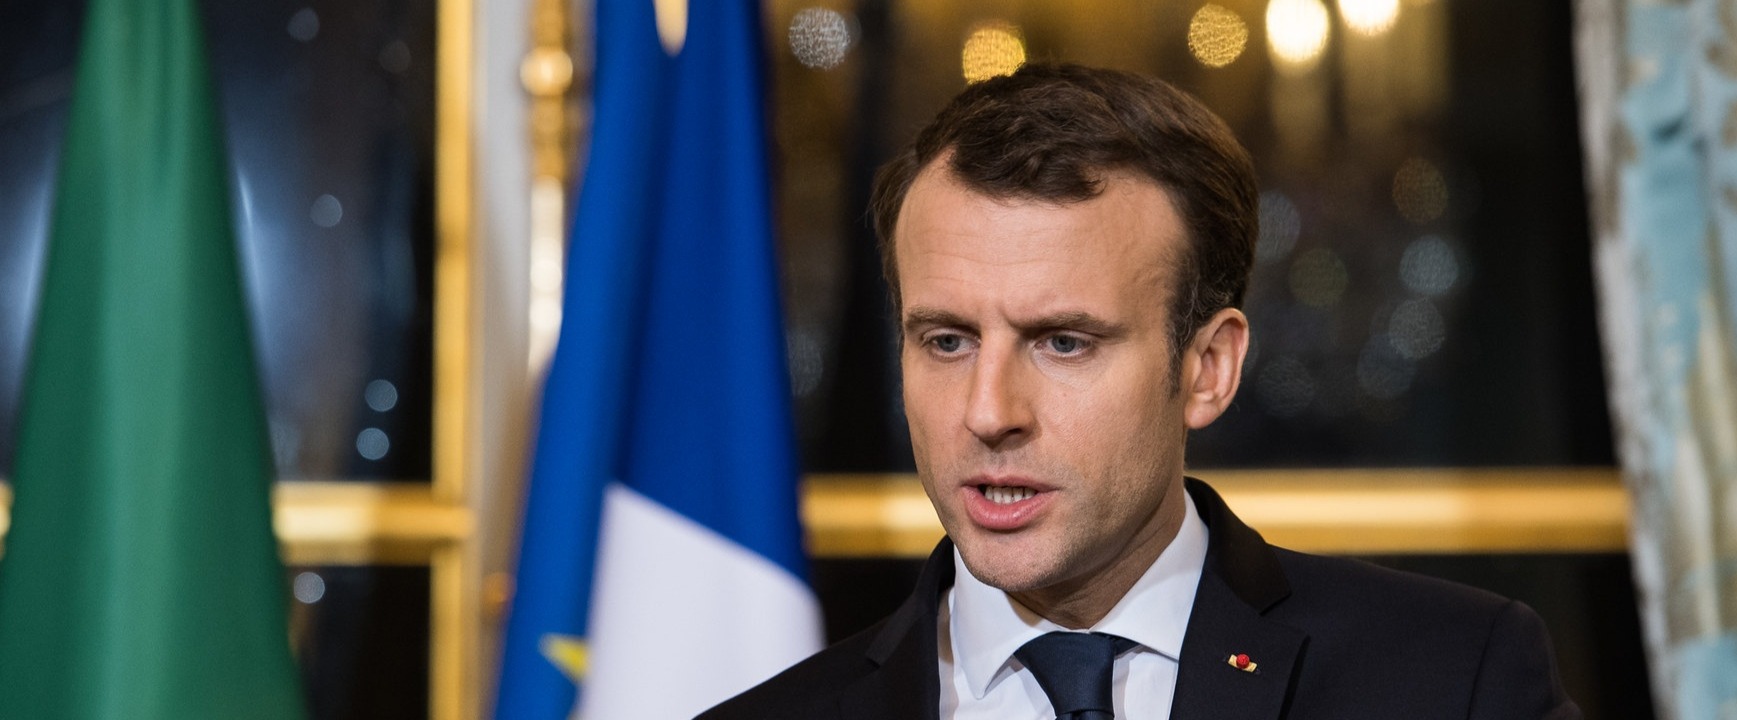 Le président Emmanuel Macron a exprimé au pape sa douleur suite à l'attentat de Nice | © Présidence du Bénin/Flickr/CC BY-NC-ND 2.0